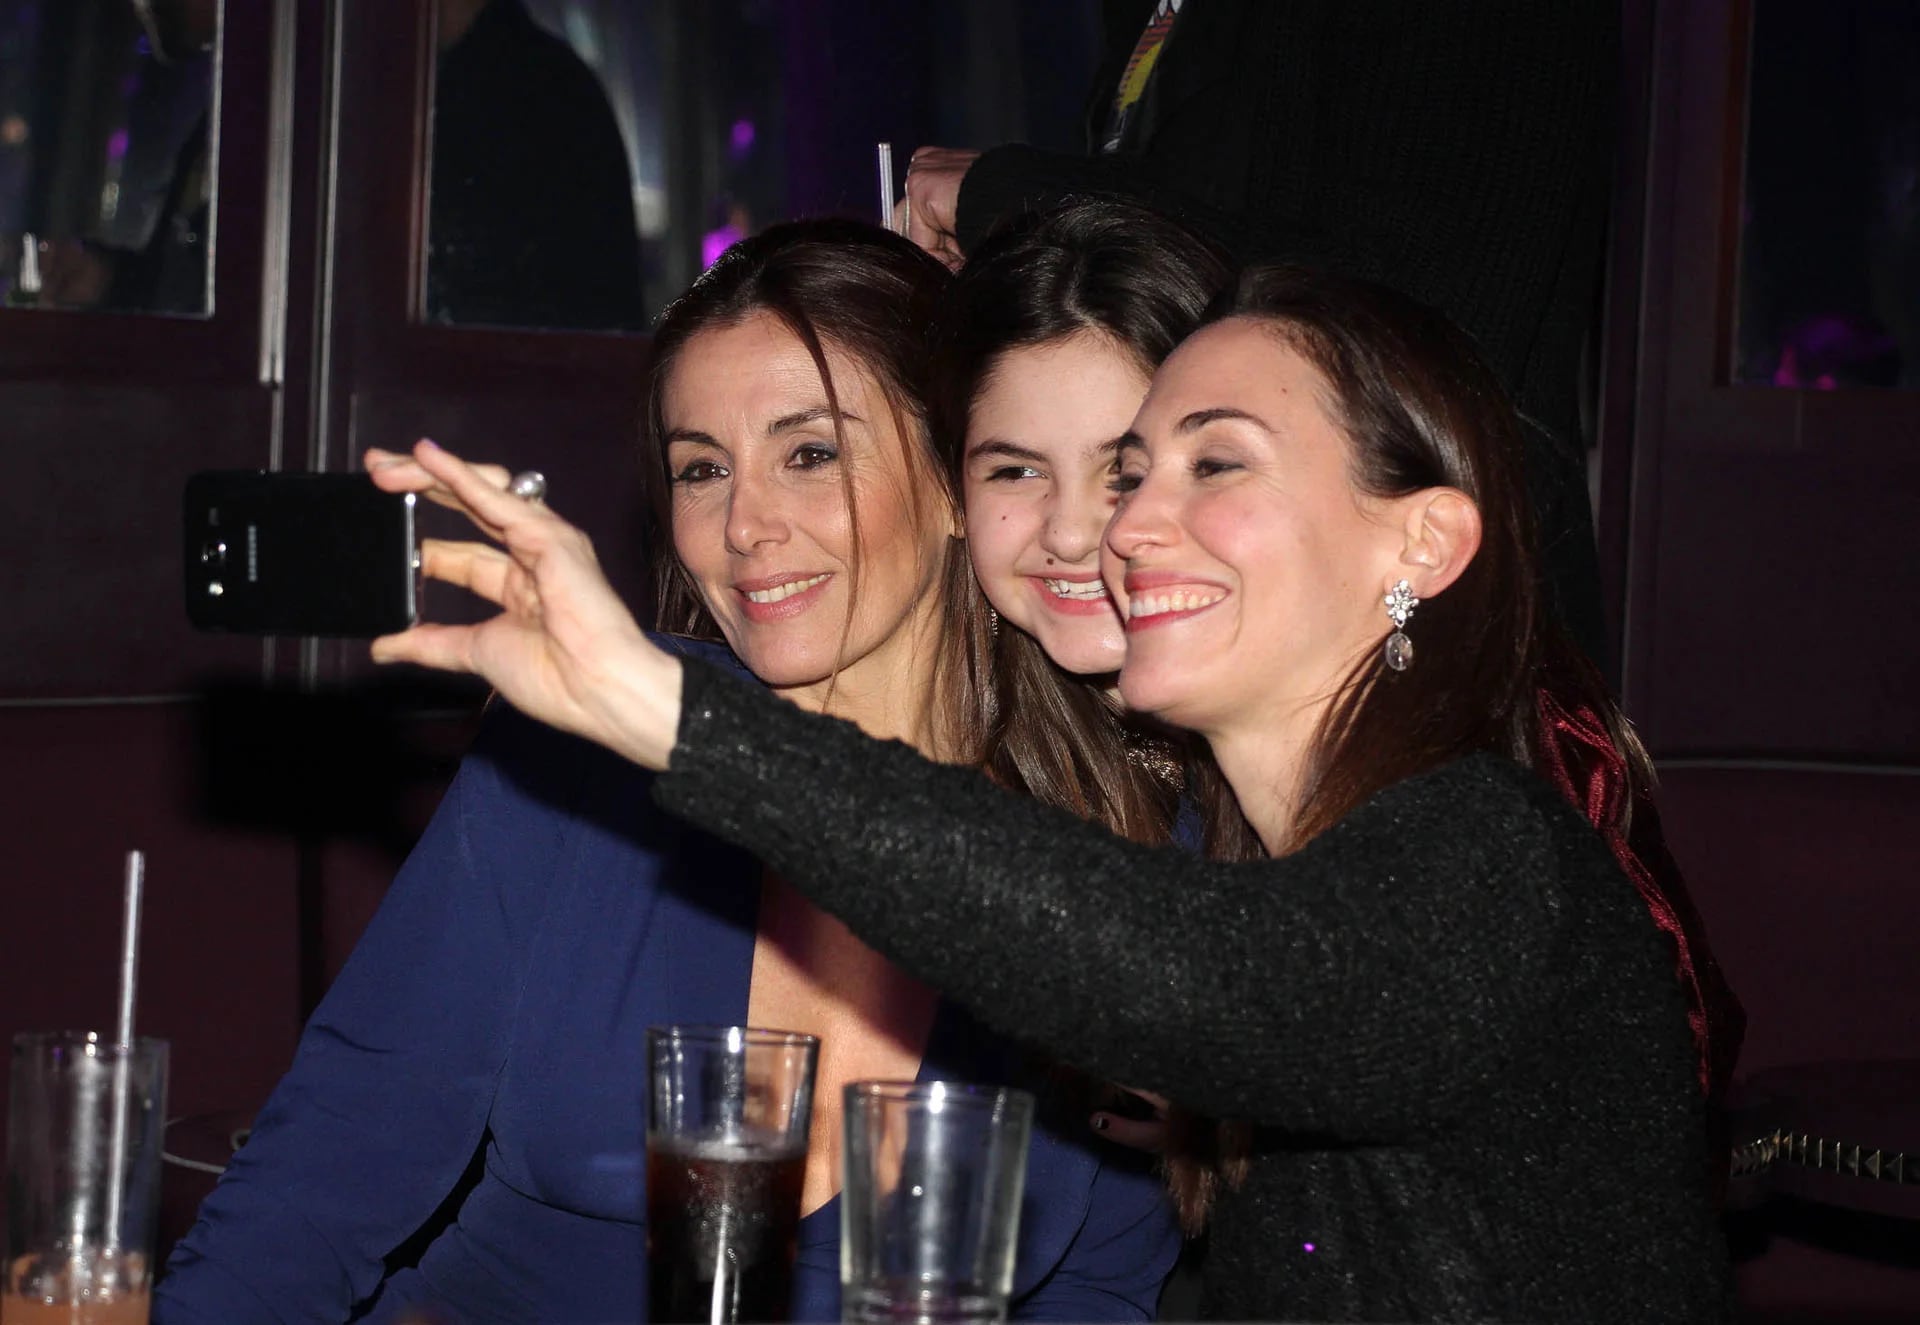 La selfie de Viviana Saccone, Guadalupe Manent y Malena solda